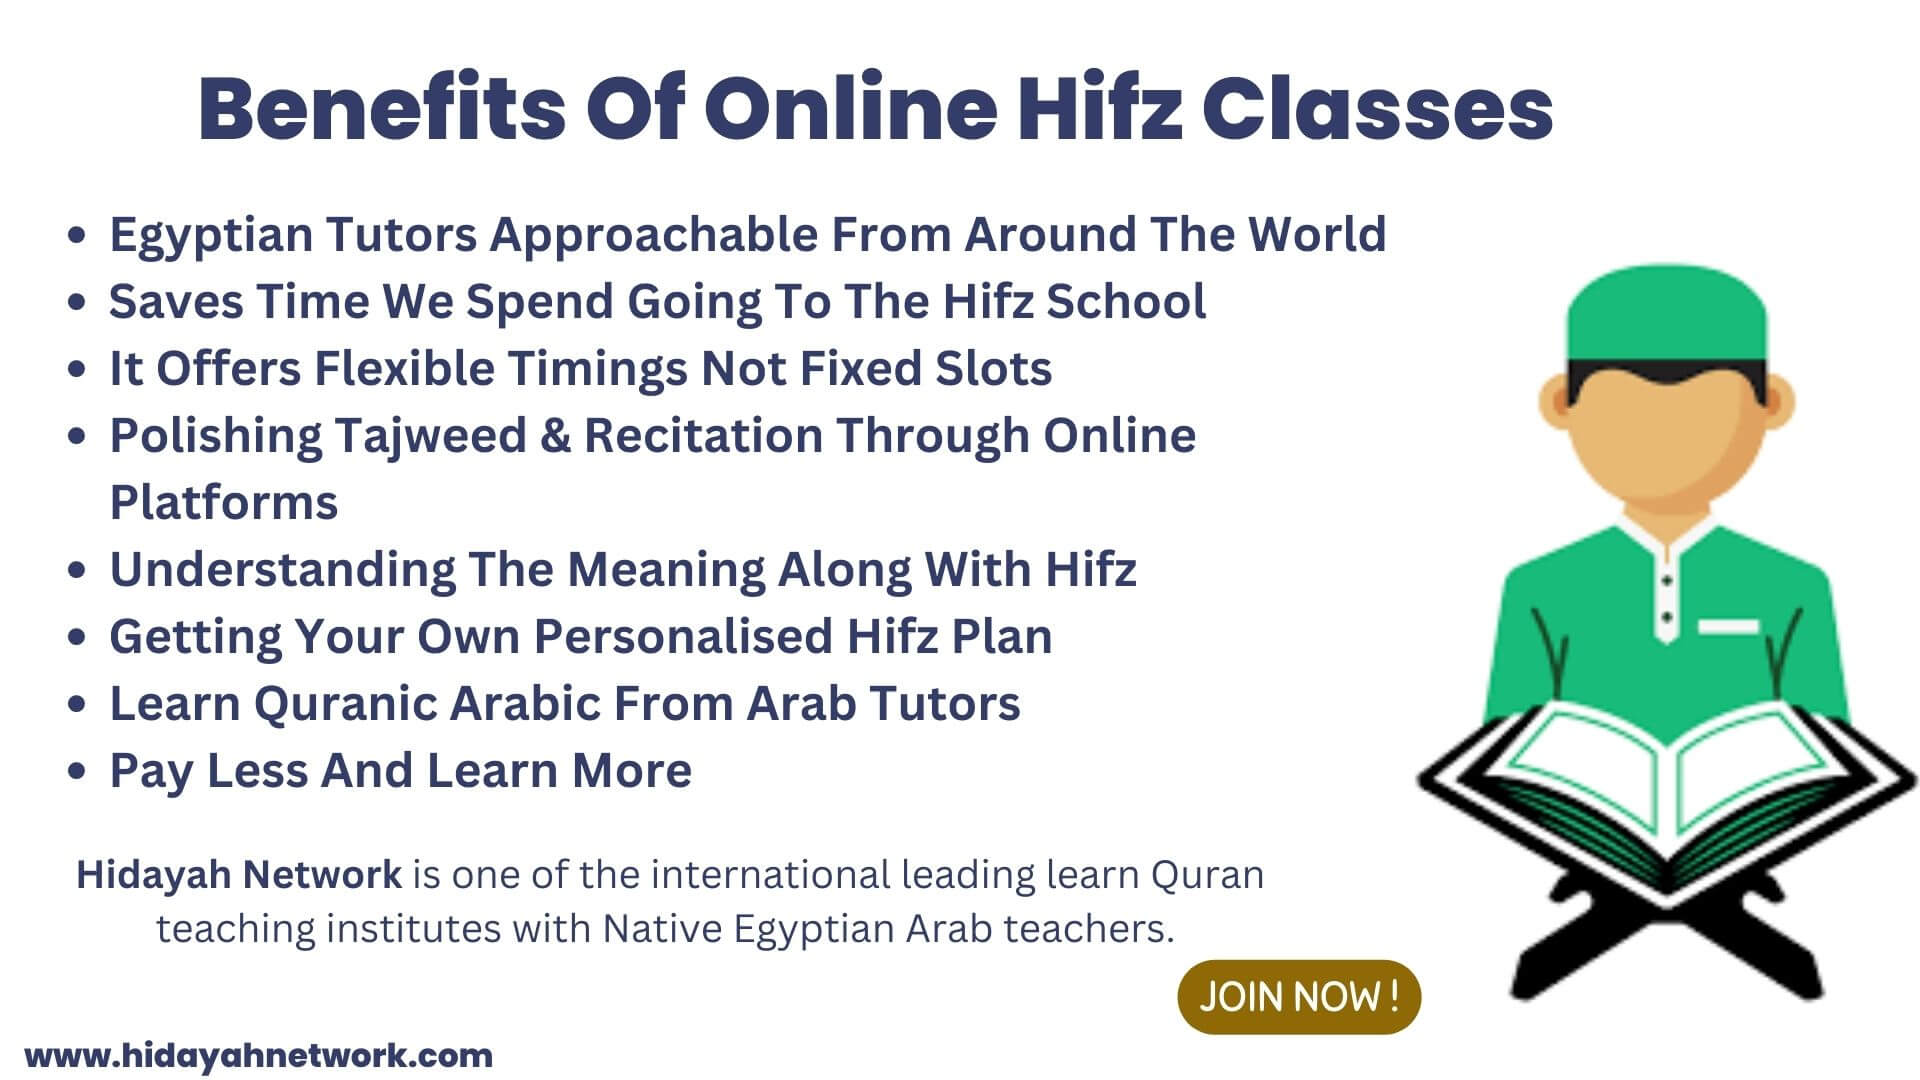 Benefits Of Online Hifz Classes